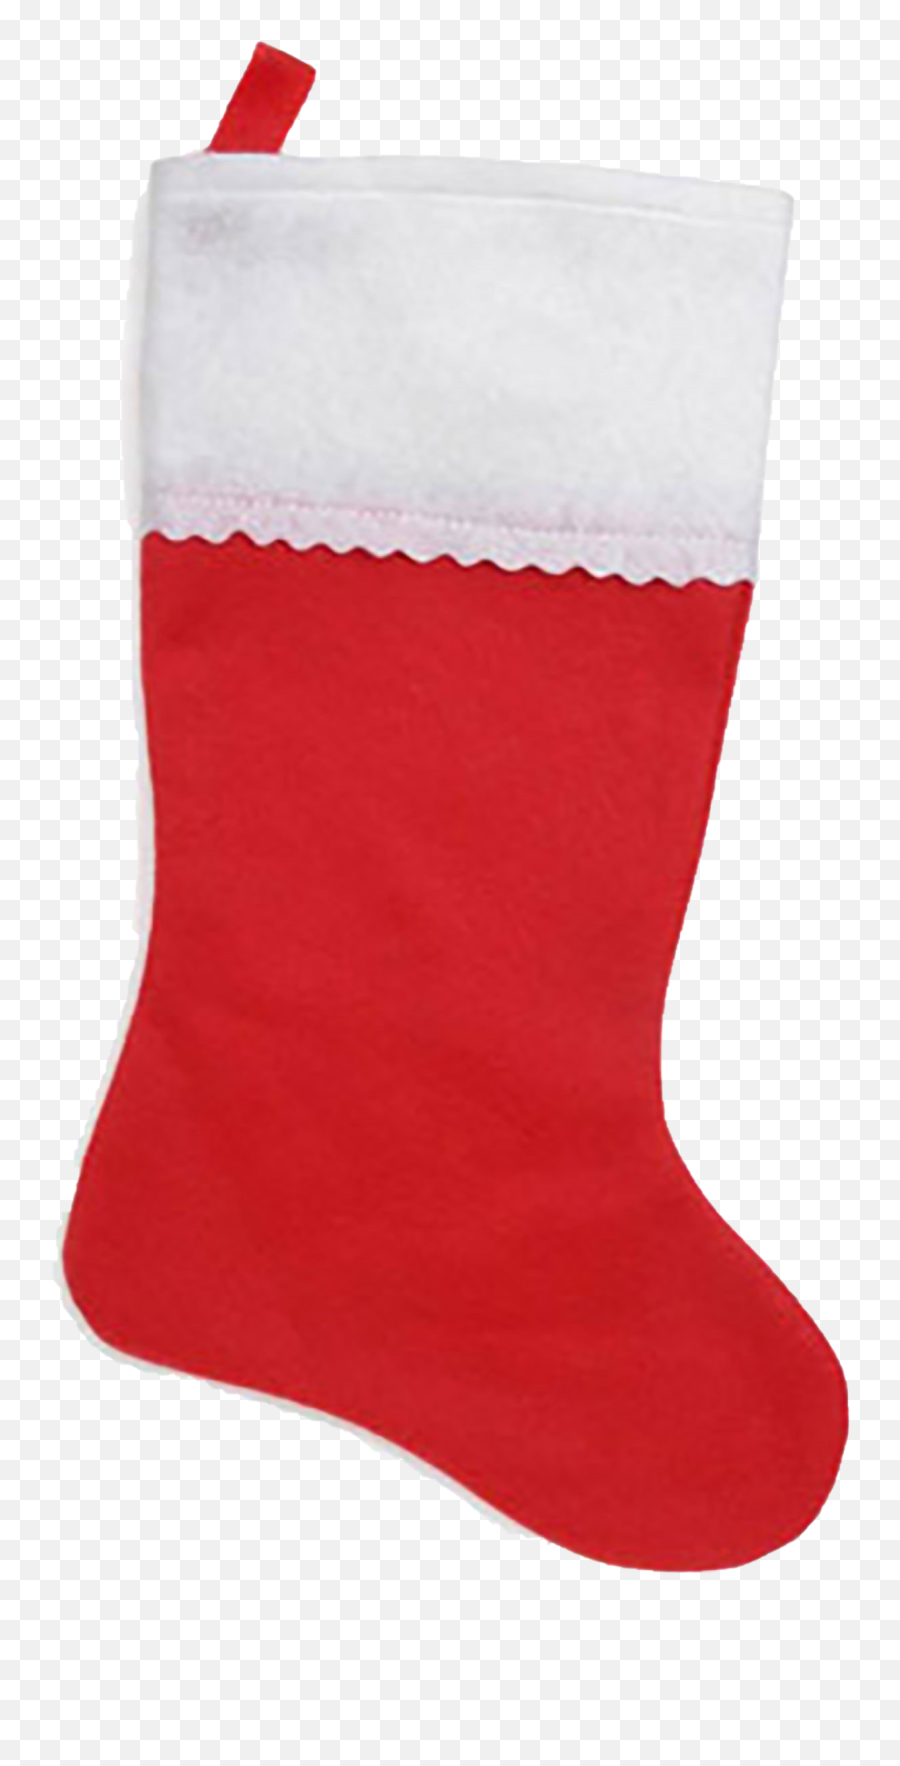 Christmas Stockings Png Image - Christmas Stocking Emoji,Stocking Png